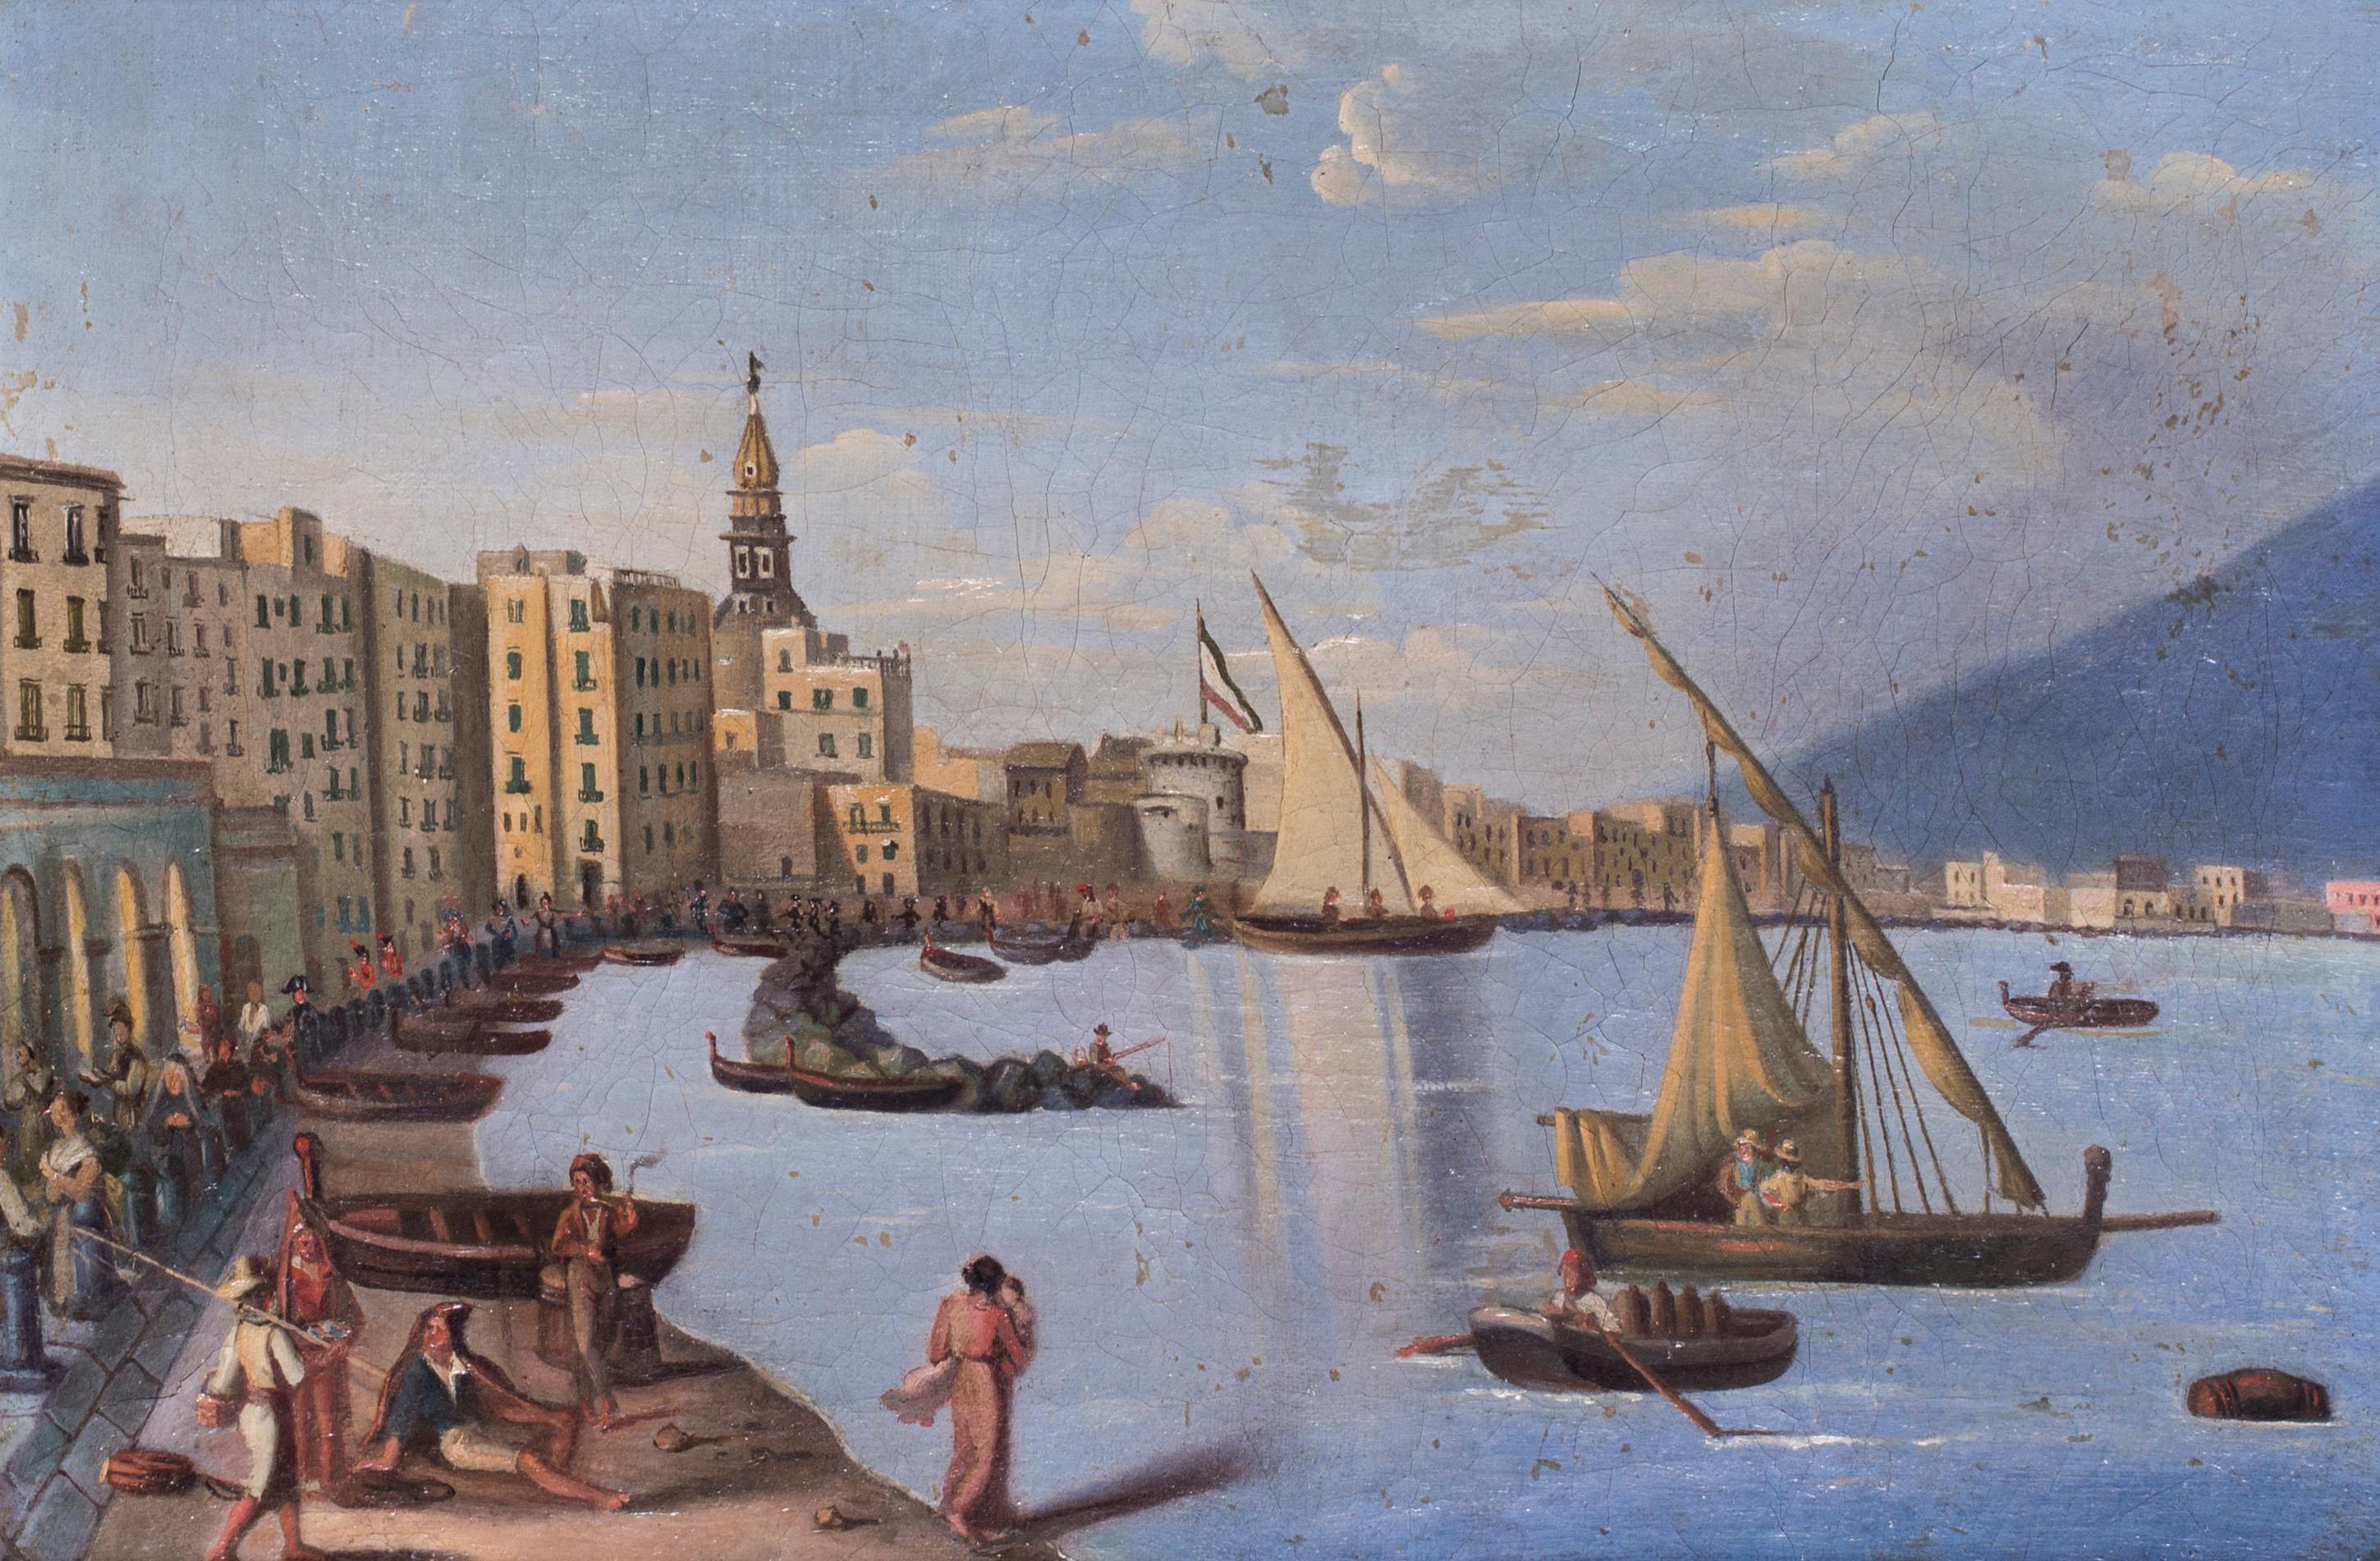 Landscape Painting Unknown - Naples pendant l'occupation napoléonienne, peinture à l'huile sur toile, vers 1810